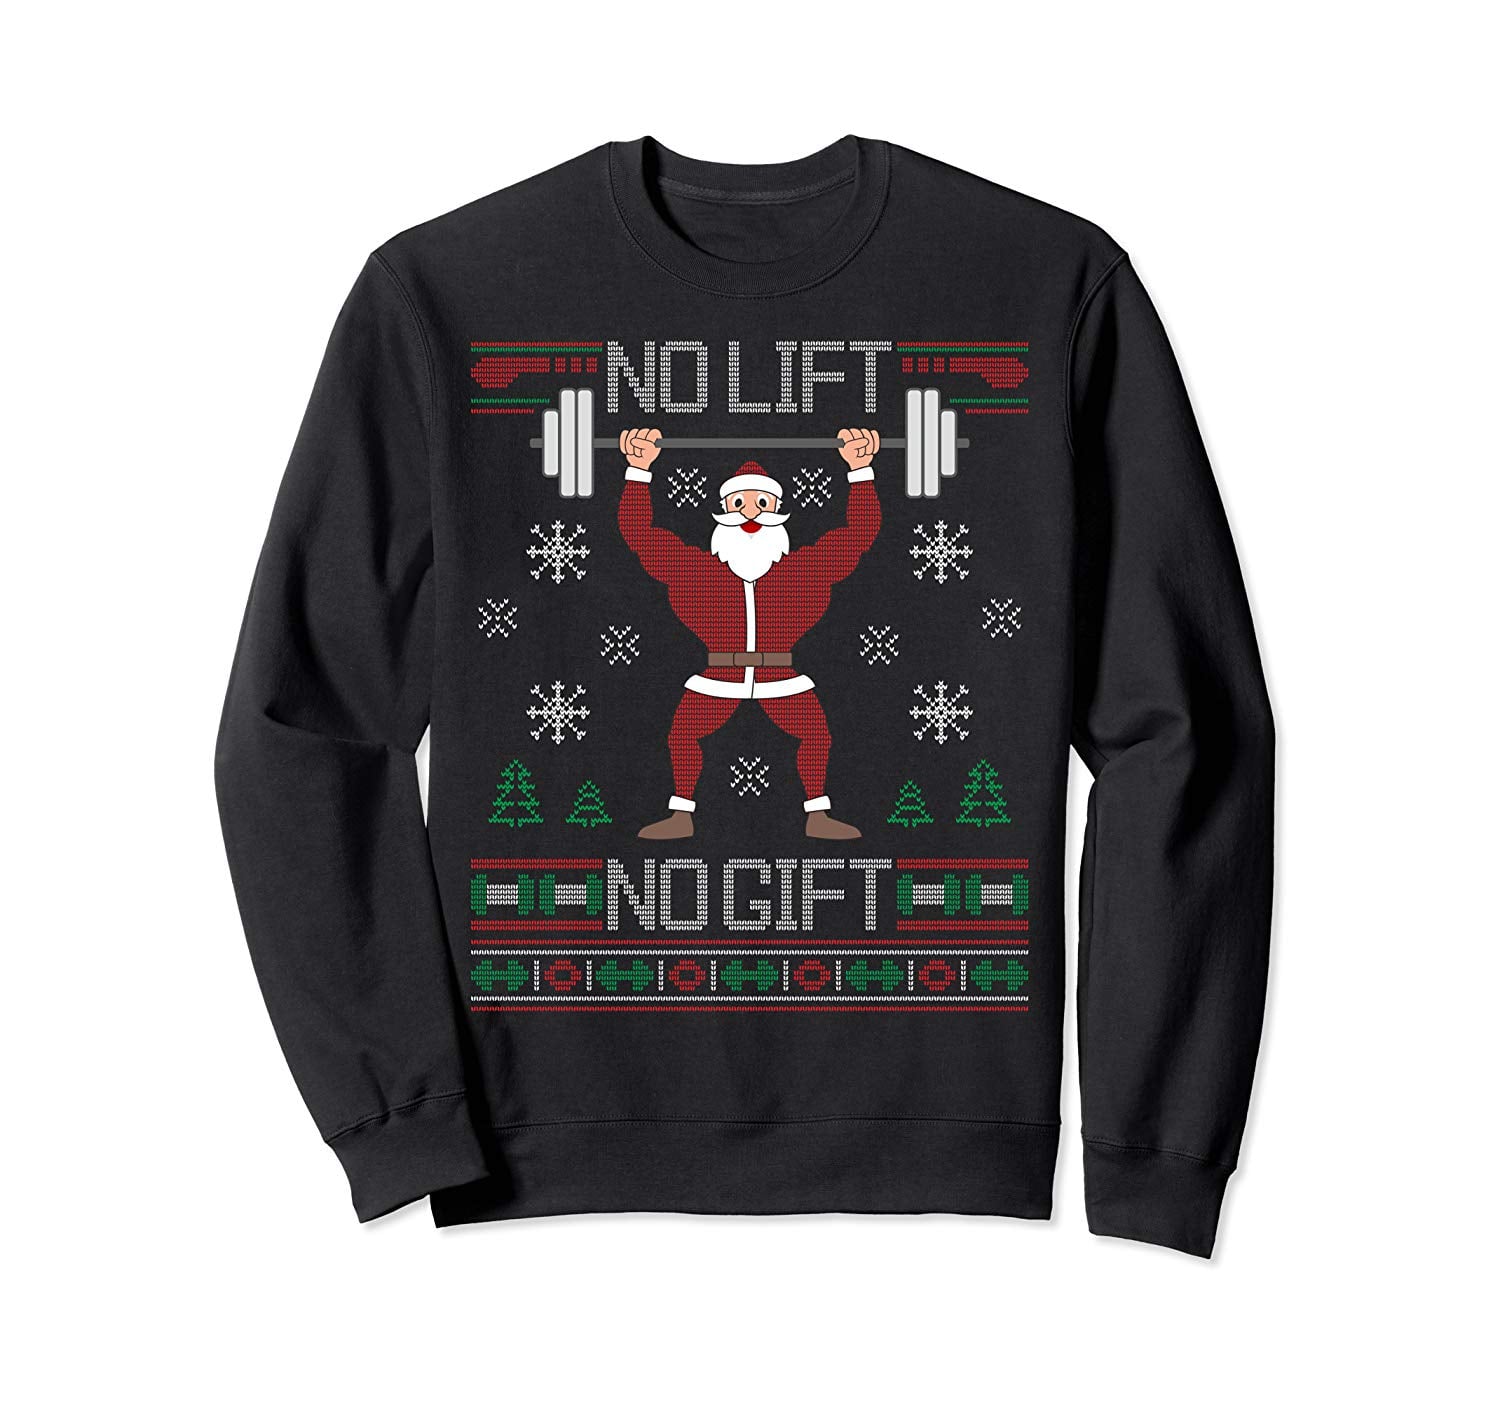 Hsctek Ugly Christmas Sweatshirts for Unisex Adult 